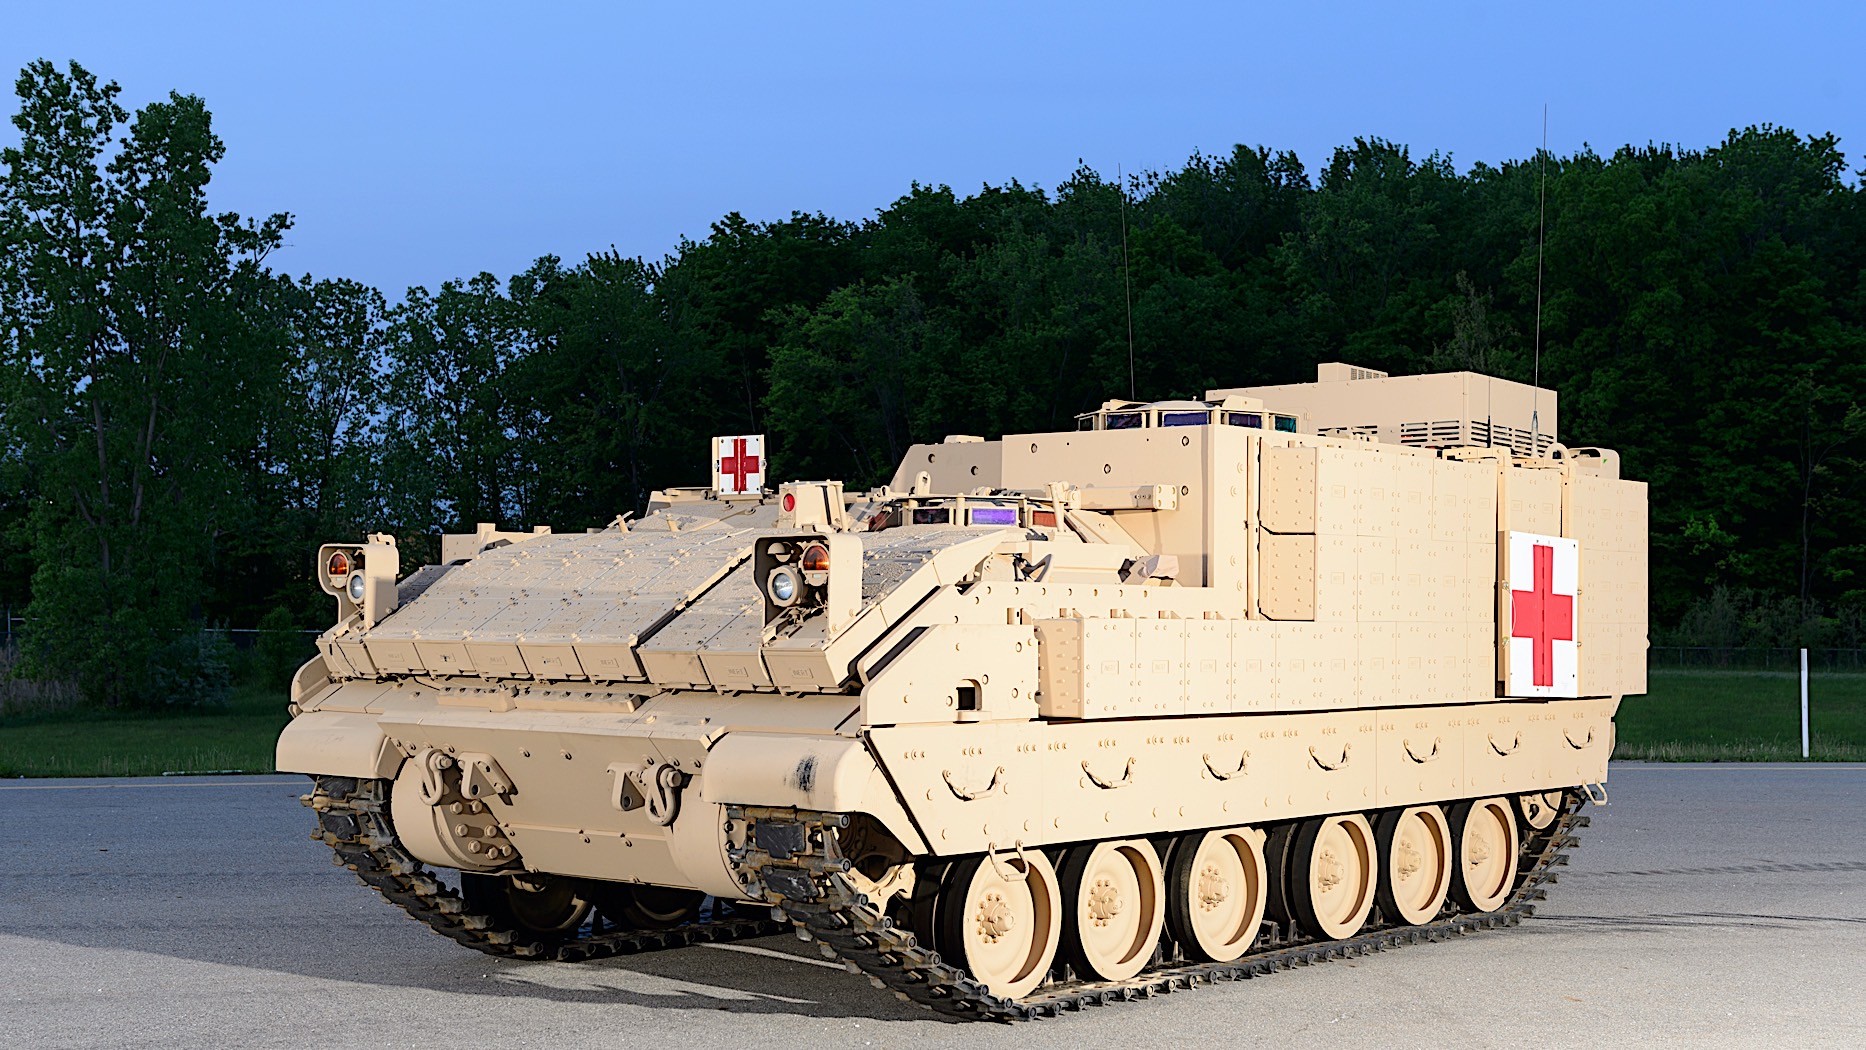 New Military Vehicles 2014